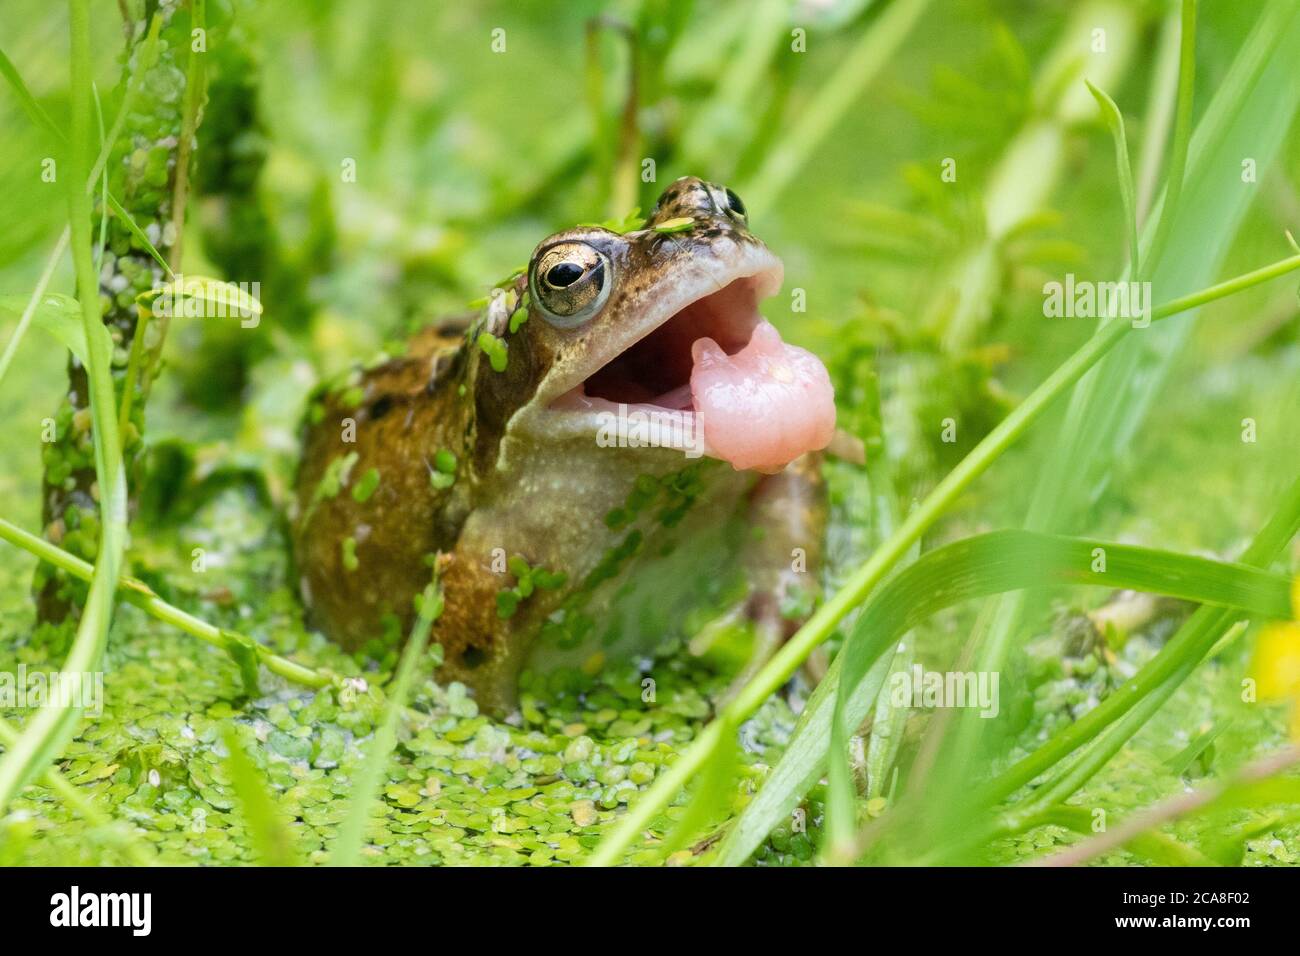 Gewöhnlicher Frosch (Rana temporaria) in großbritannien Garten Wildtierteich mit Entenkraut bedeckt mit Mund offen nach dem Versuch, eine Wespe zu fangen Stockfoto